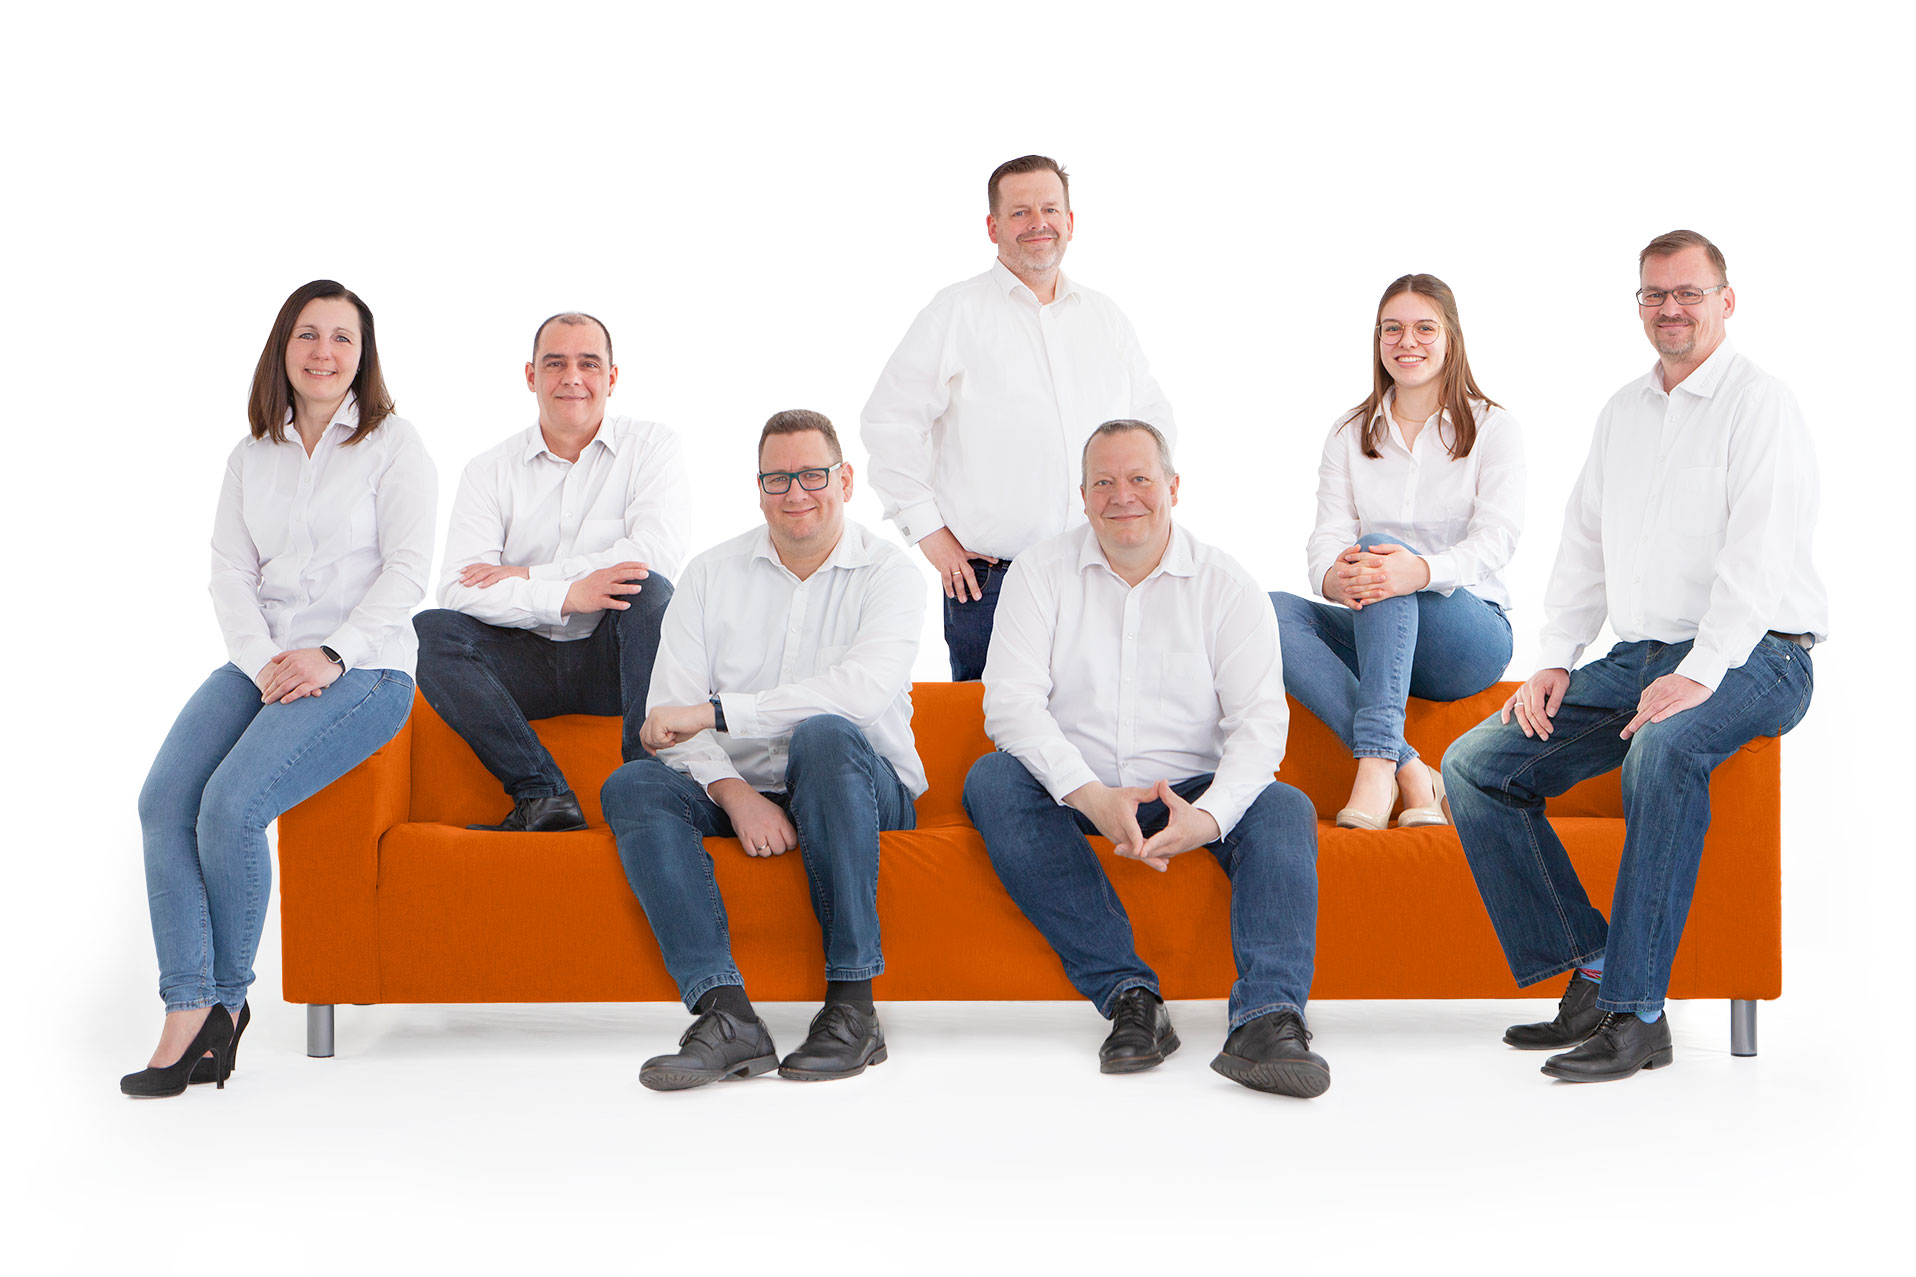 Das Team der Datenschützer der Konzept 17 GmbH